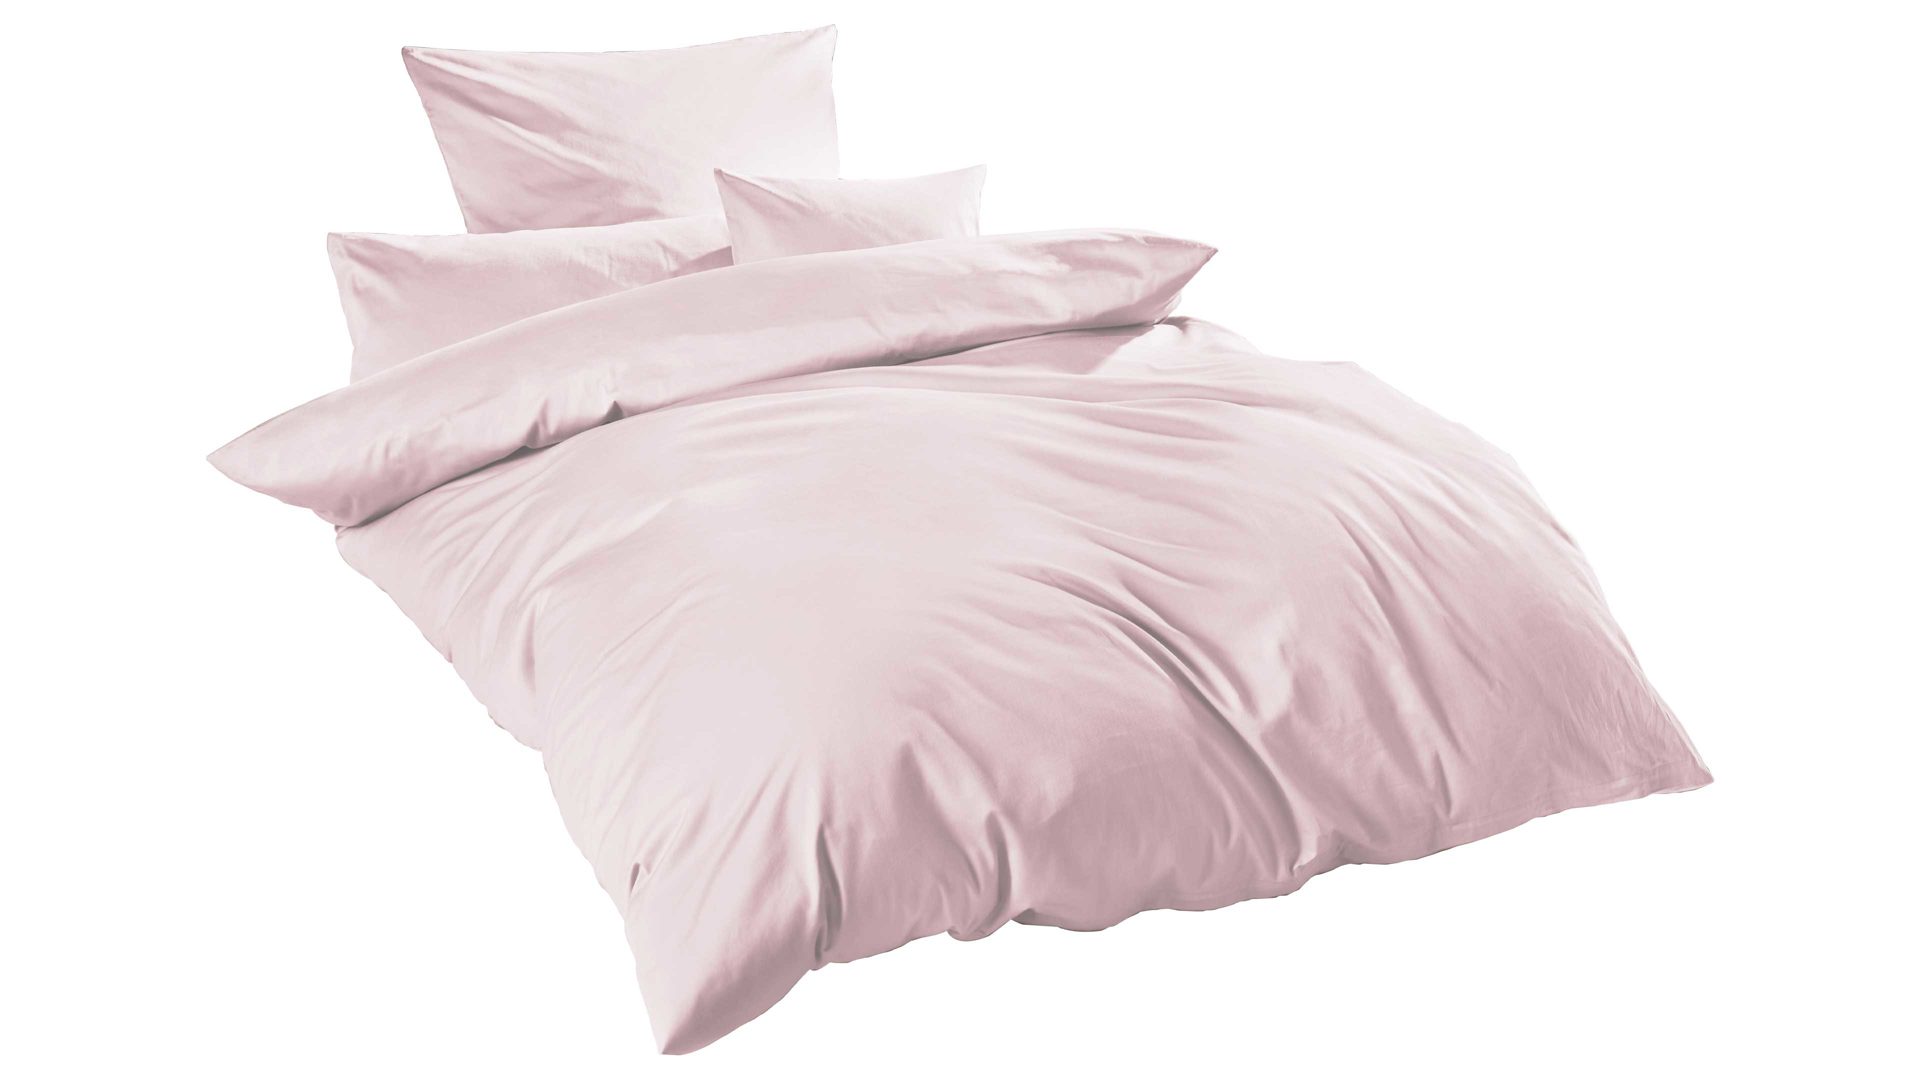 Bettwäsche-Set H.g. hahn haustextilien aus Stoff in Pink HAHN Luxus-Satin-Bettwäsche Sempre puderfarbener Baumwollsatin - zweiteilig, ca. 135 x 200 cm